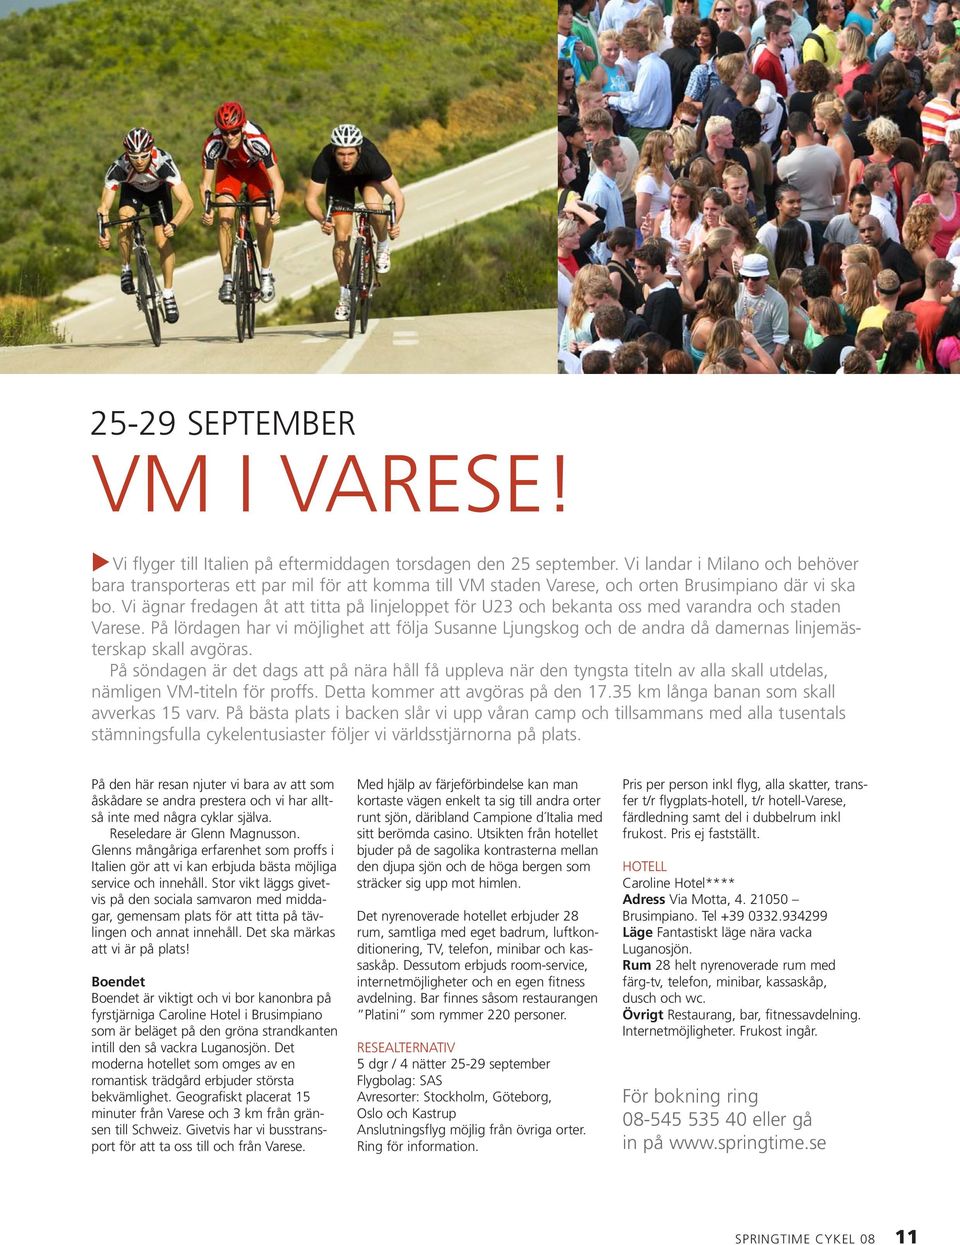 Vi ägnar fredagen åt att titta på linjeloppet för U23 och bekanta oss med varandra och staden Varese.